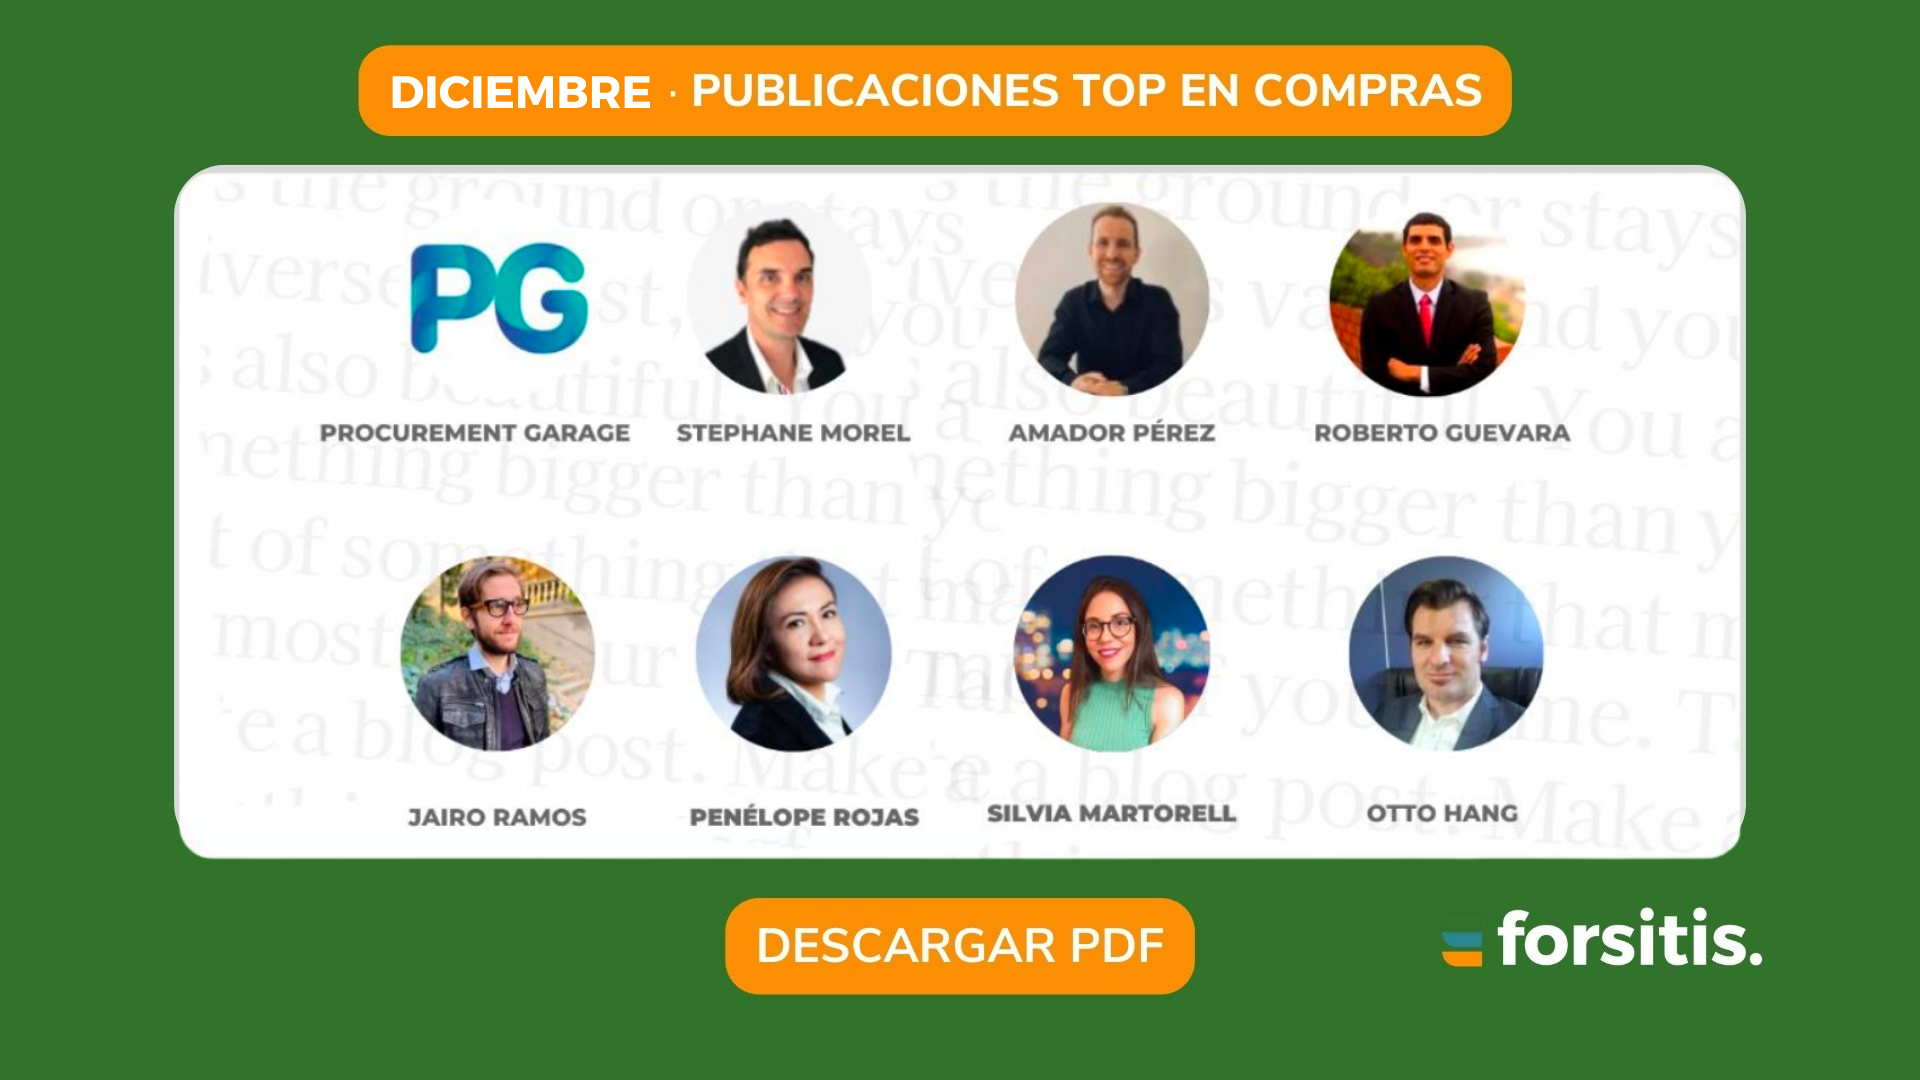 Top Publicaciones Diciembre Forsitis